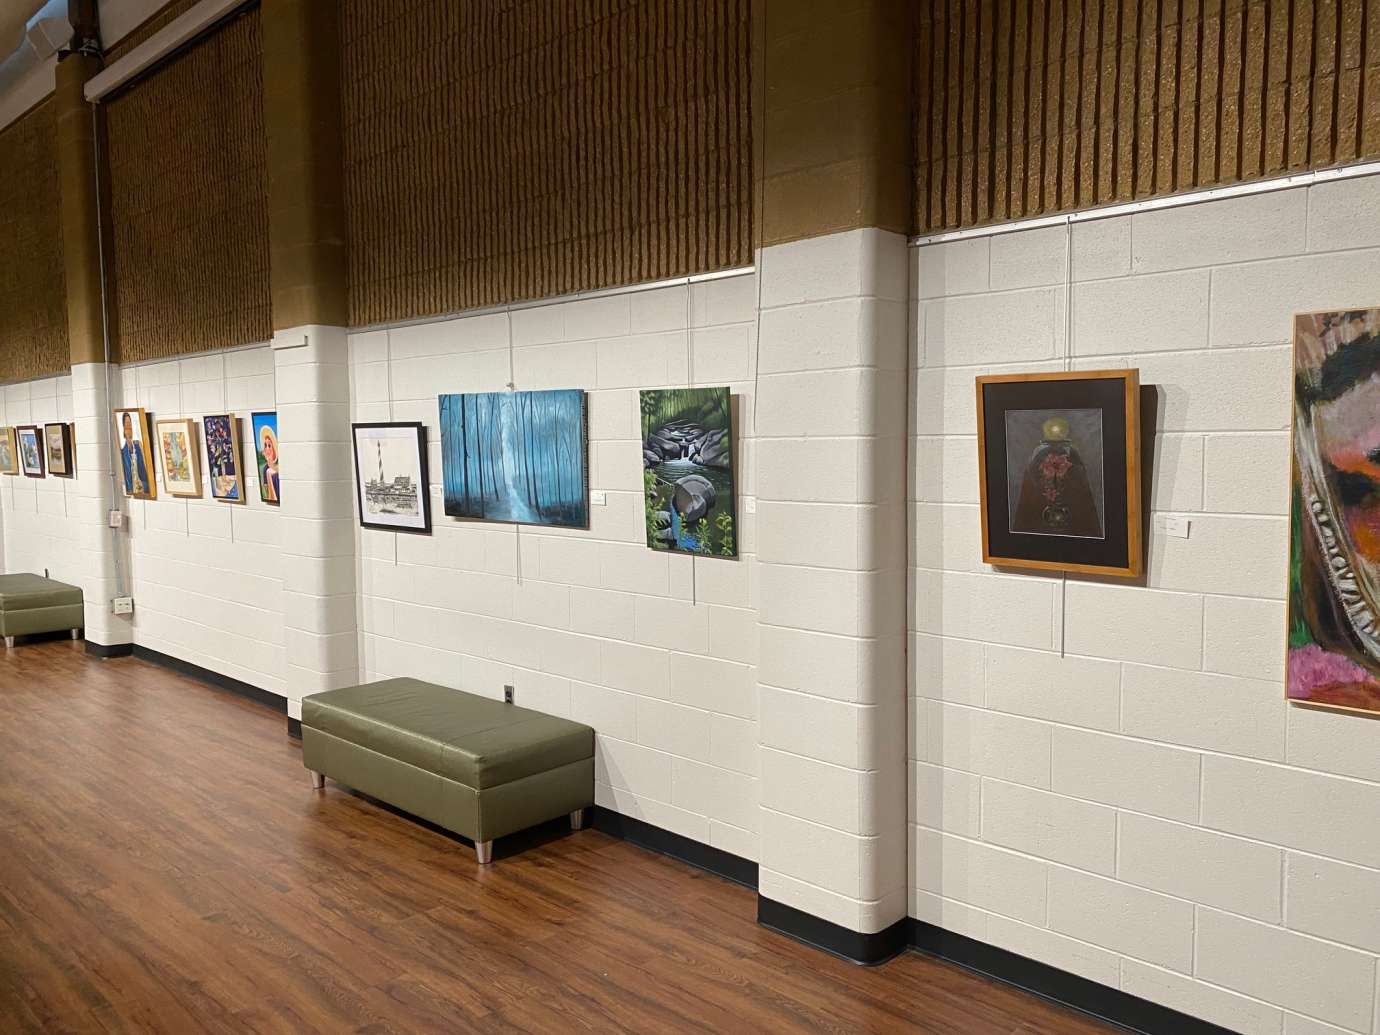 Several art pieces hang from the wall at Sertoma Art Center